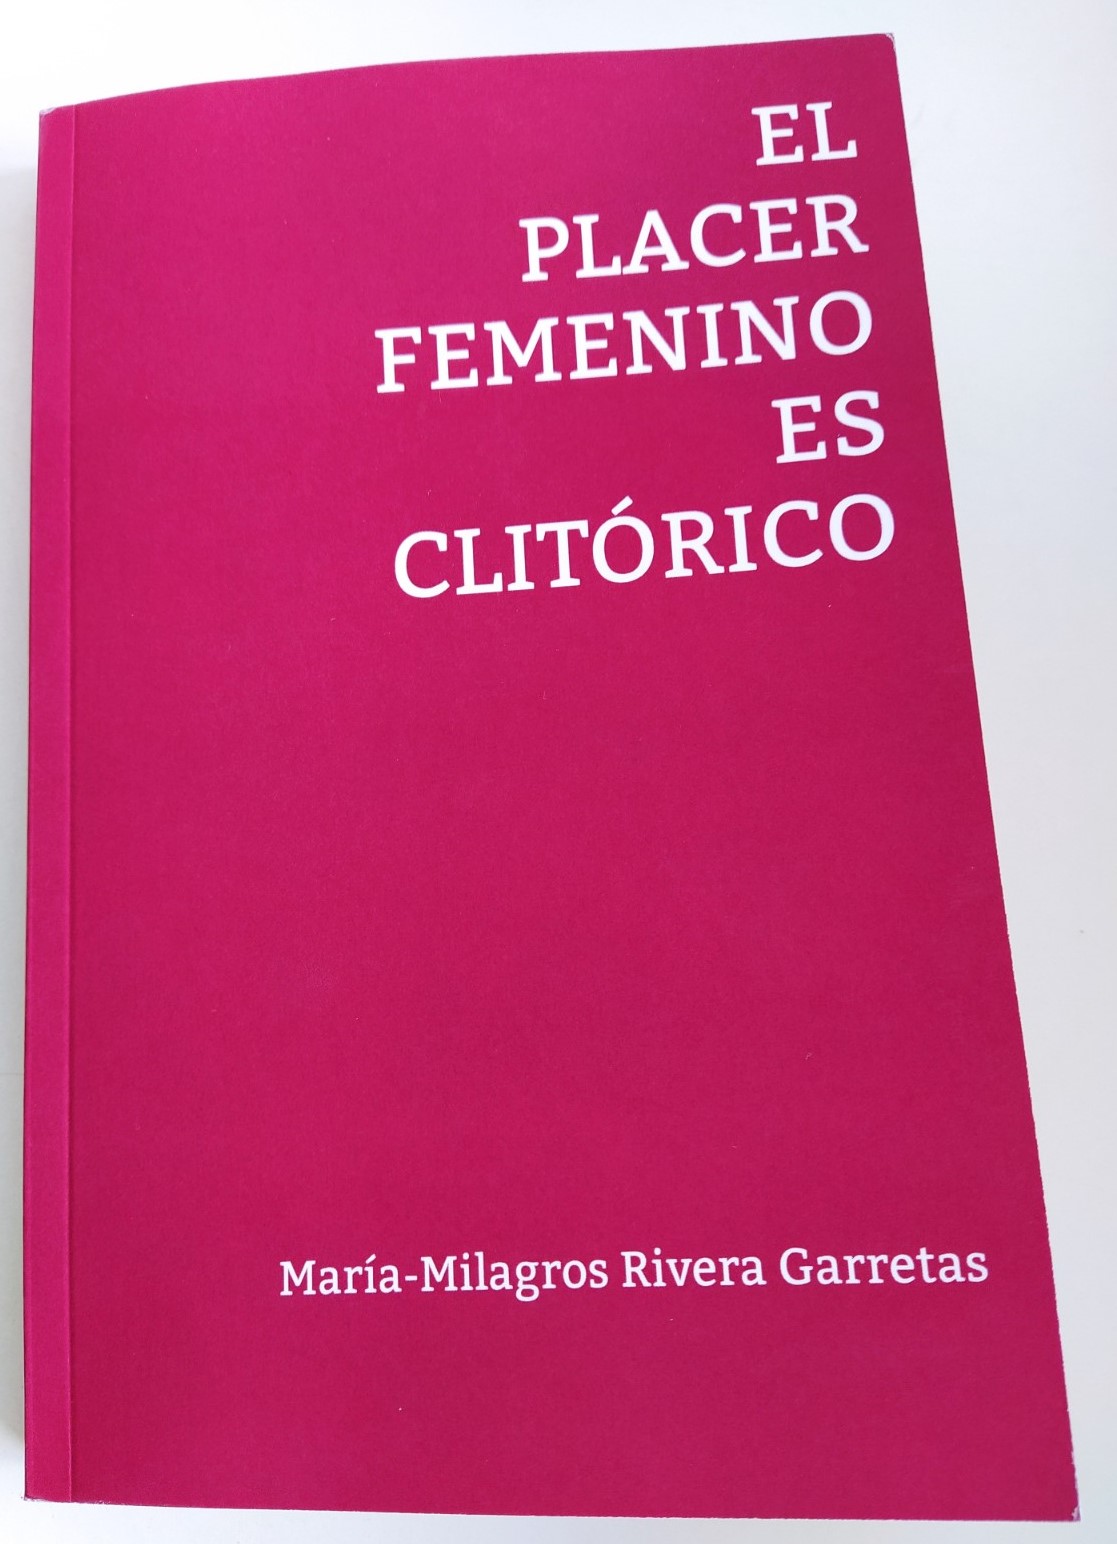 S'acaba de publicar el llibre María-Milagros Rivera Garretas